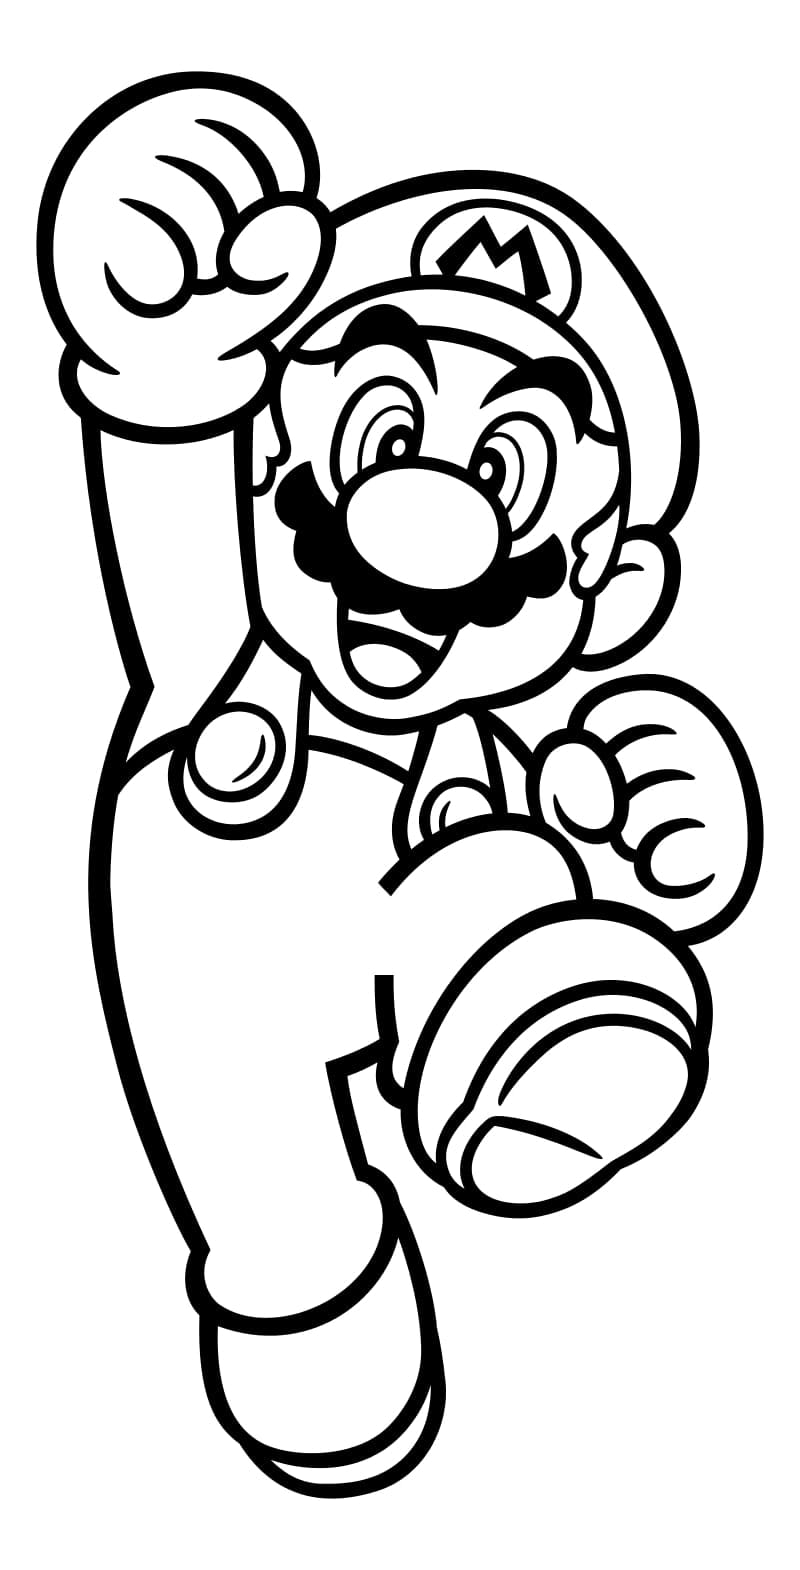 Total 102 Imagen Dibujos De Mario Bros Para Imprimir Viaterramx